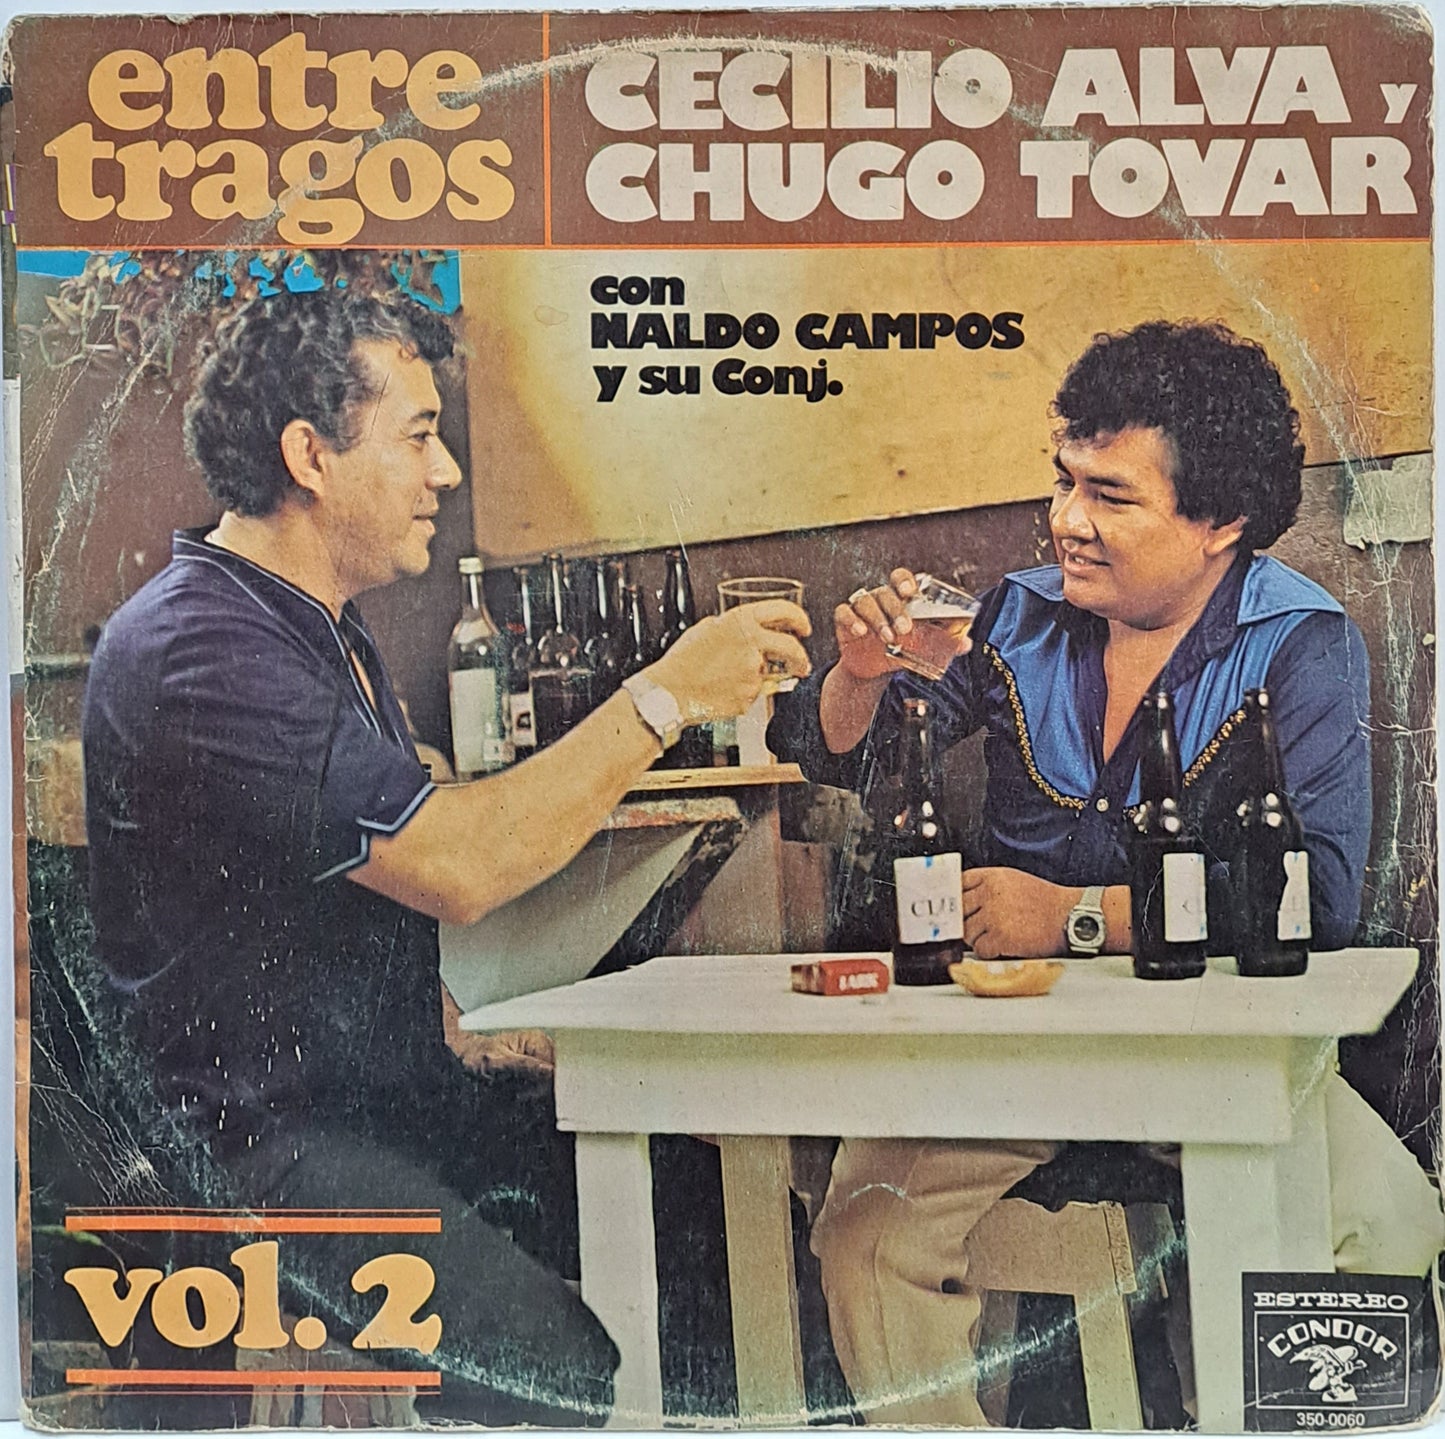 CECILIO ALVA Y CHUGO TOBAR - ENTRE TRAGOS VOL2 LP